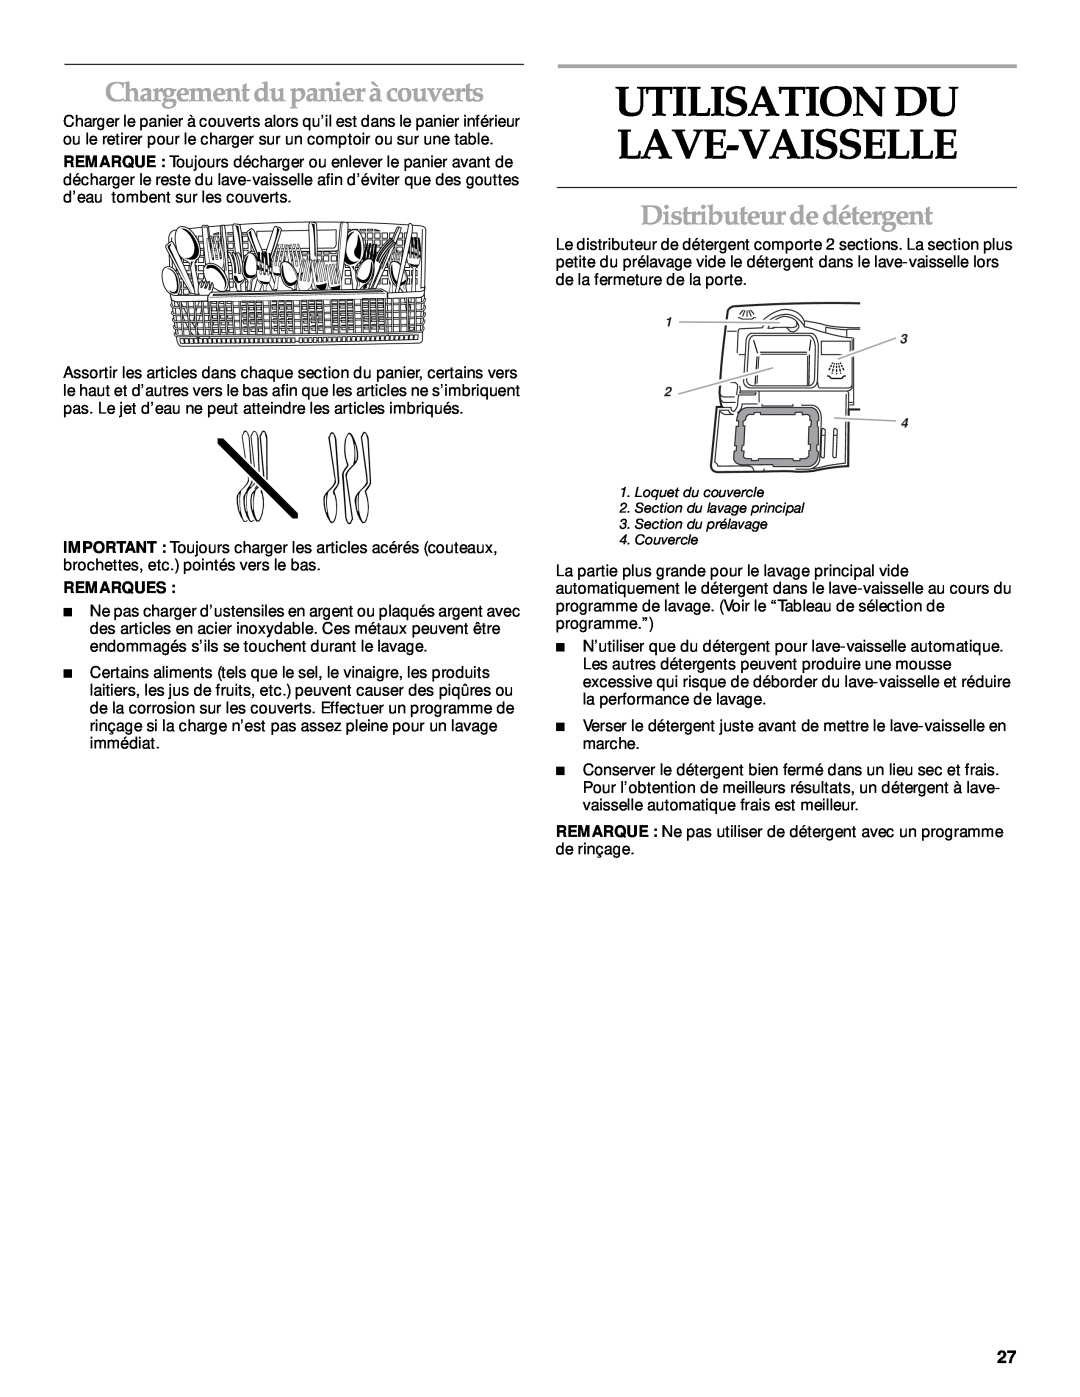 KitchenAid KUDP01TJ manual Chargement du panier à couverts, Distributeur de détergent, Utilisation Du Lave-Vaisselle 